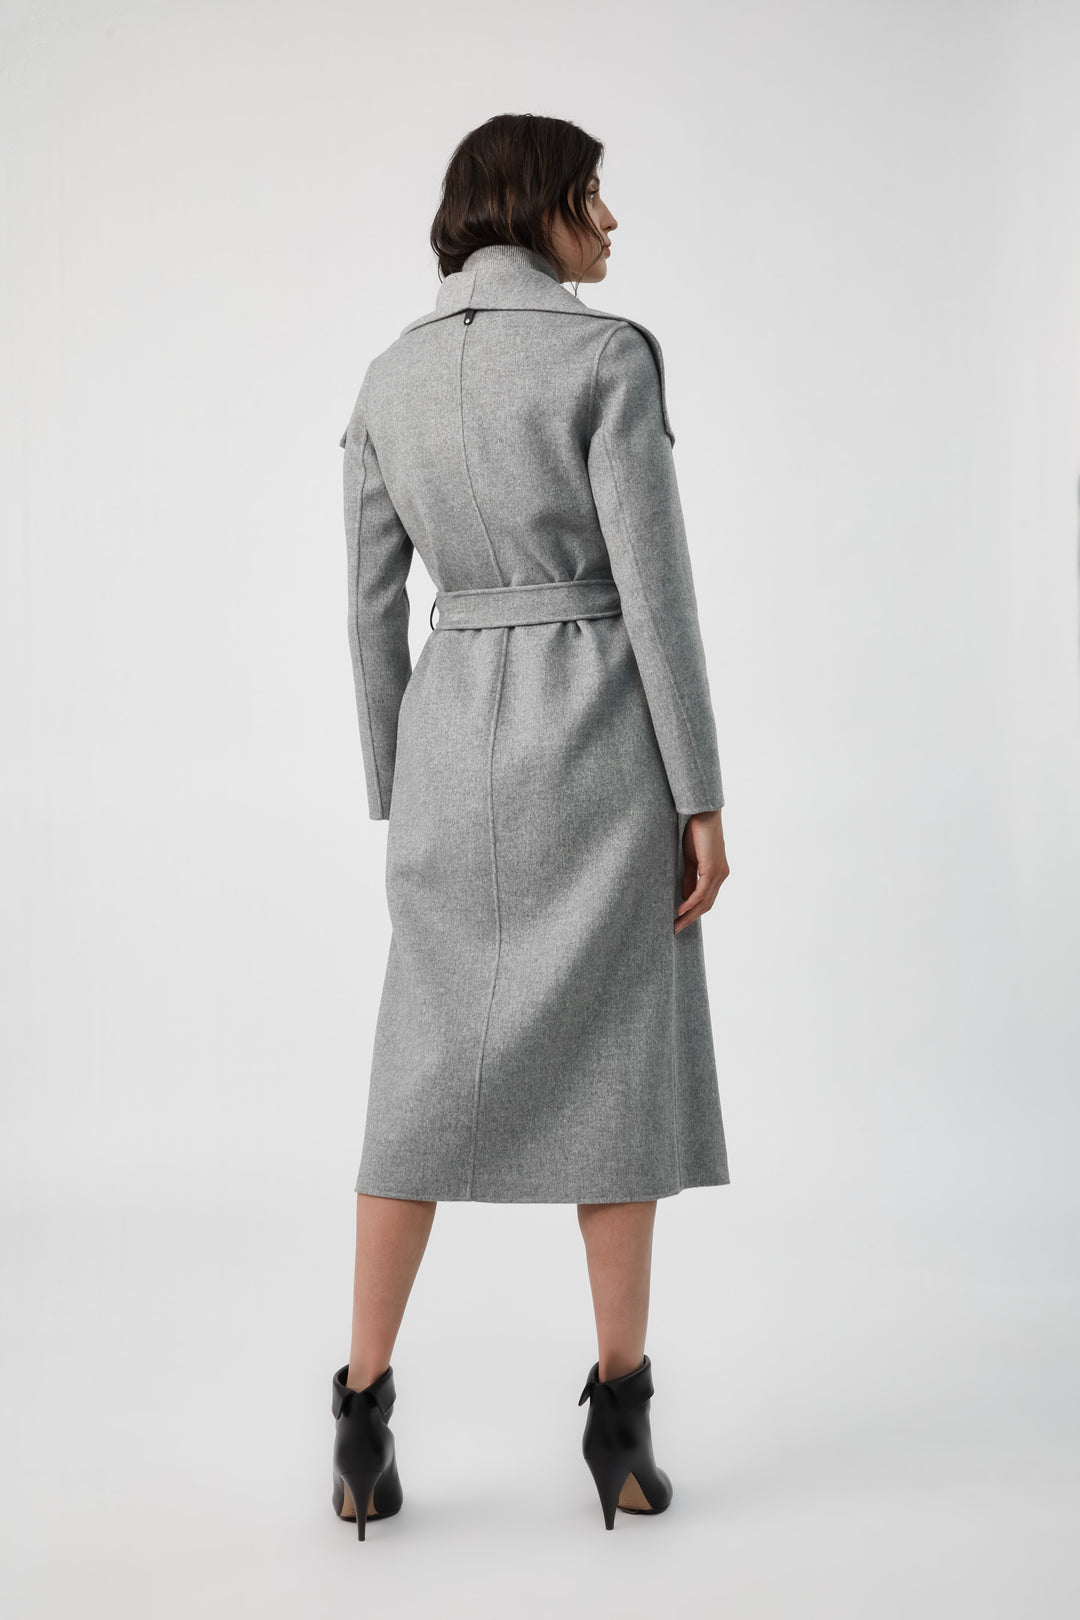 MACKAGE - Mai Wool Coat in Light Grey